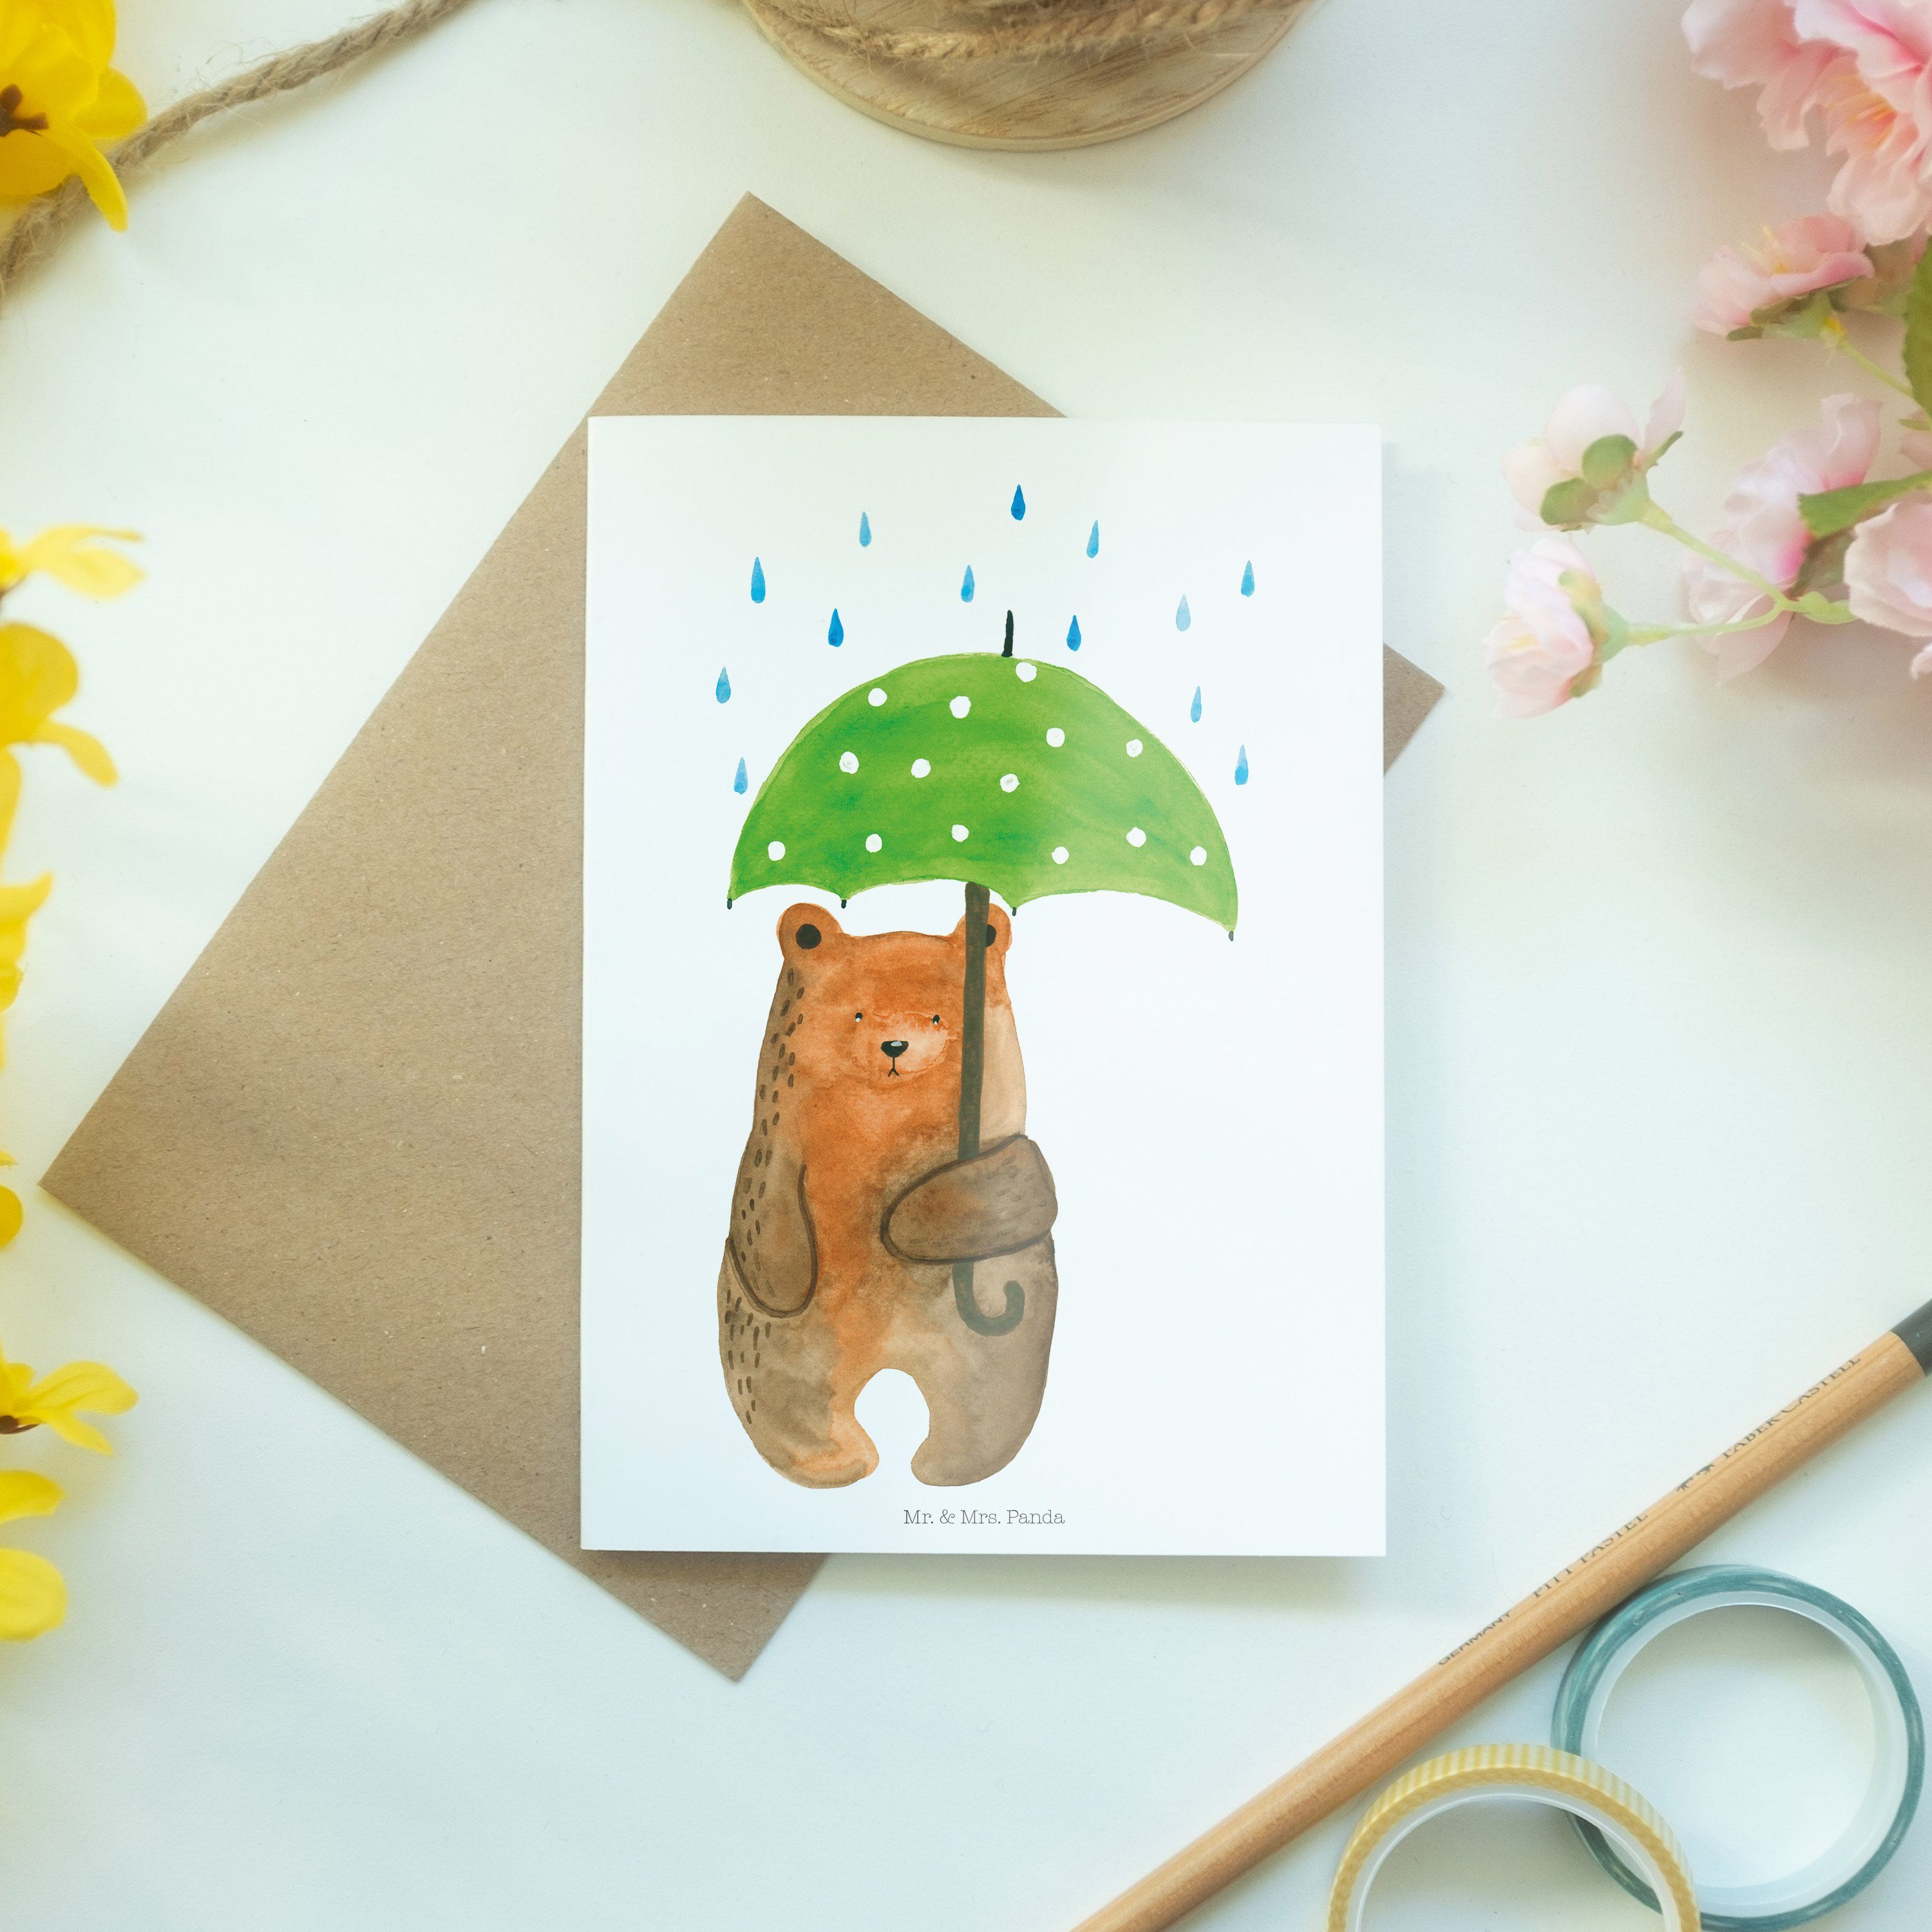 Mr. & Mrs. Panda Regenschirm Grußkarte - Geschenk, Liebe - Teddy, Weiß mit Glückwunschkarte, Bär